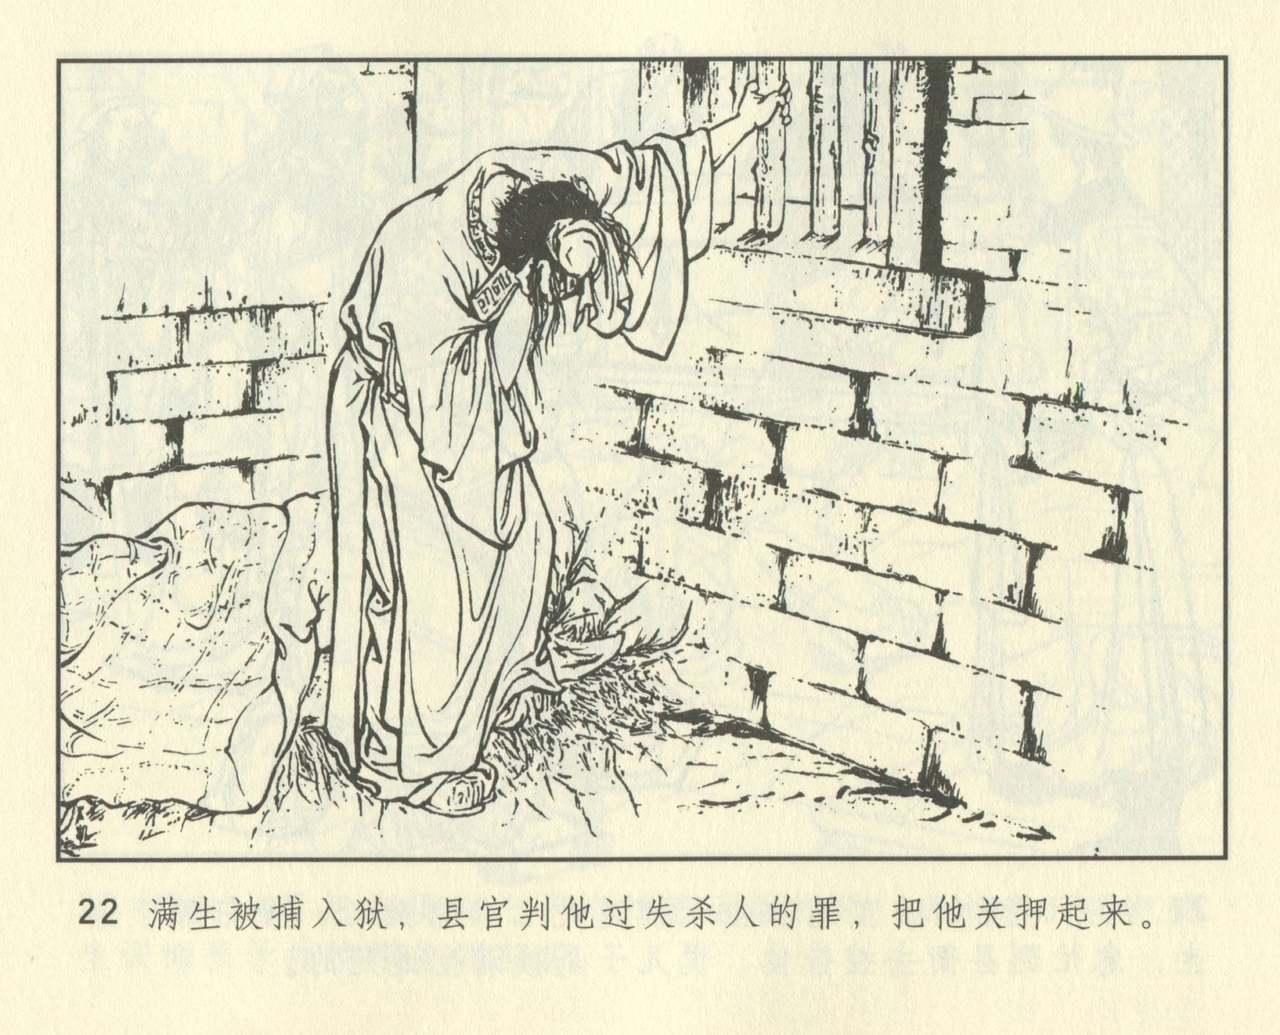 聊斋志异 张玮等绘 天津人民美术出版社 卷二十一 ~ 三十 433